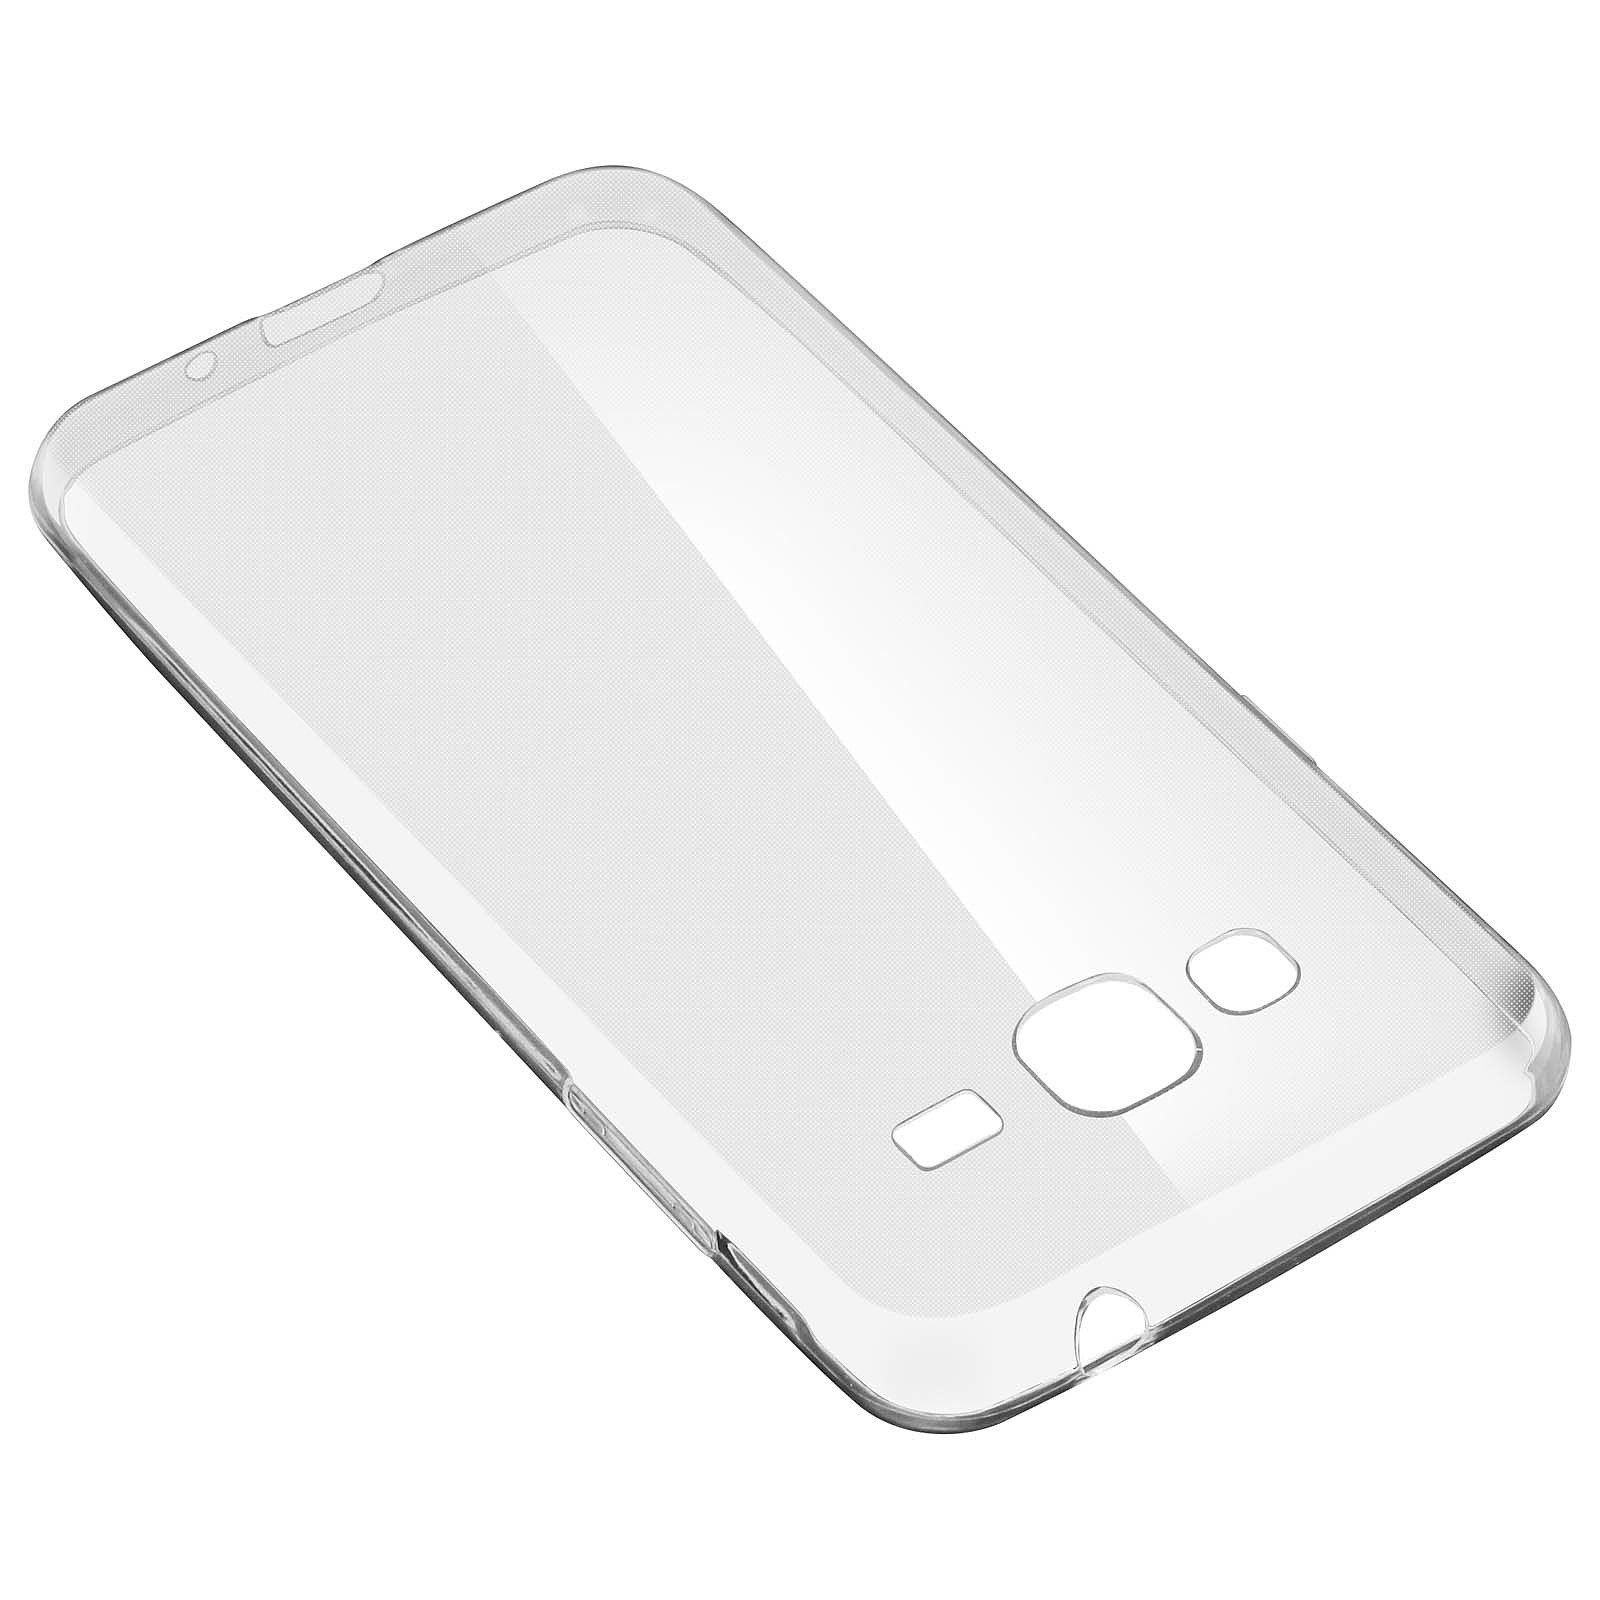 Avizar Coque Silicone Gel + Film Verre Trempe Samsung Galaxy J3 Transparent - Coque telephone Avizar